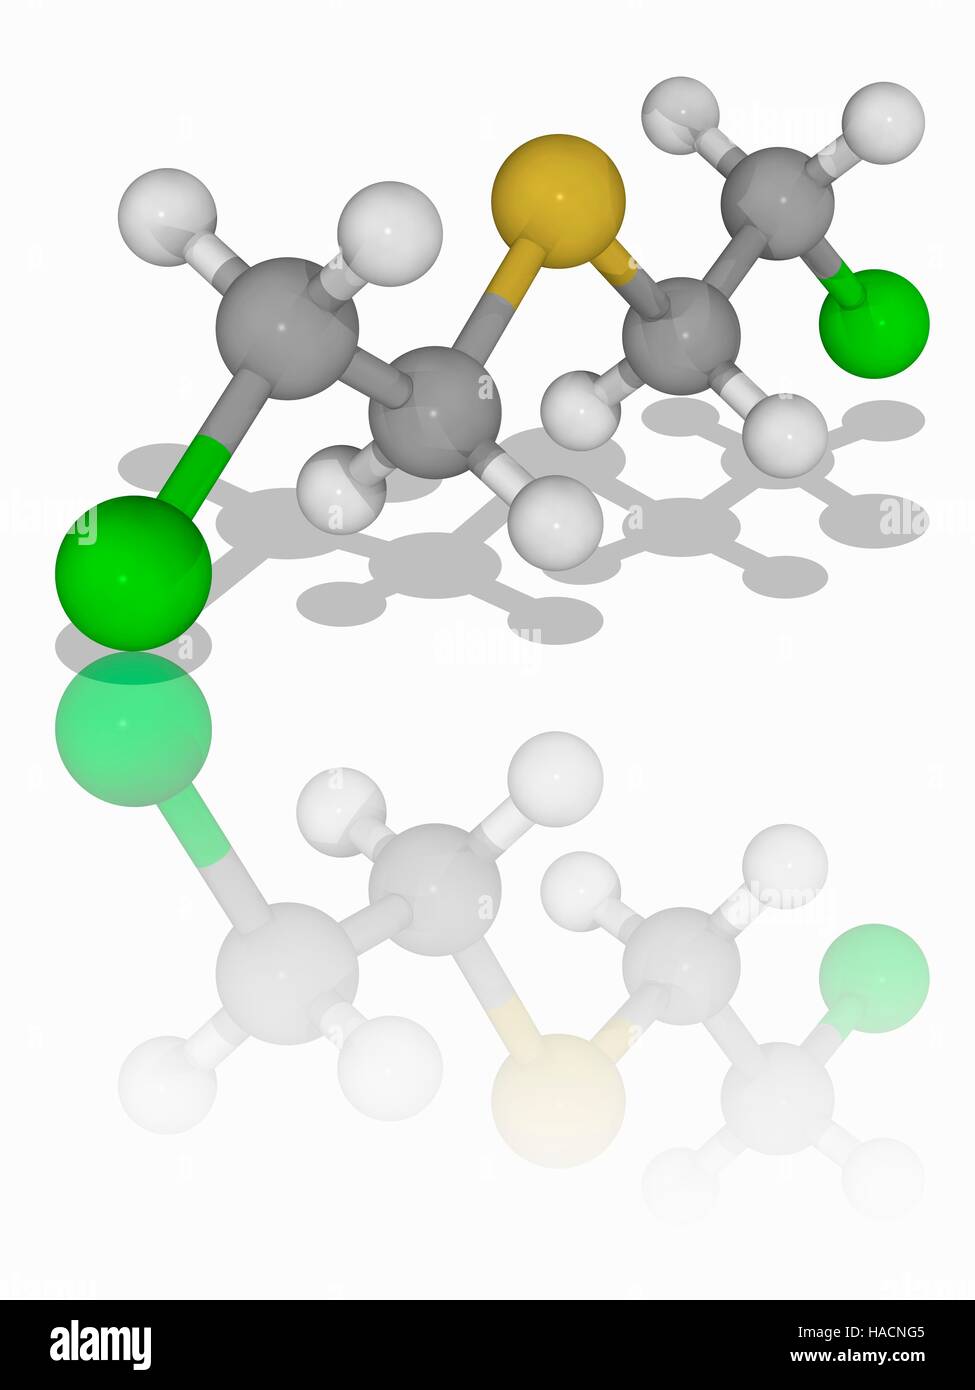 Gas mostarda. Il modello molecolare di zolfo di senape (C4.H8.Cl2.S), noto come gas mostarda. Questa guerra chimica forme agente grandi vescicole sulla cute esposta e nei polmoni. Gli atomi sono rappresentati da sfere e sono codificati a colori: carbonio (grigio), Idrogeno (bianco), zolfo (giallo) e cloro (verde). Illustrazione. Foto Stock